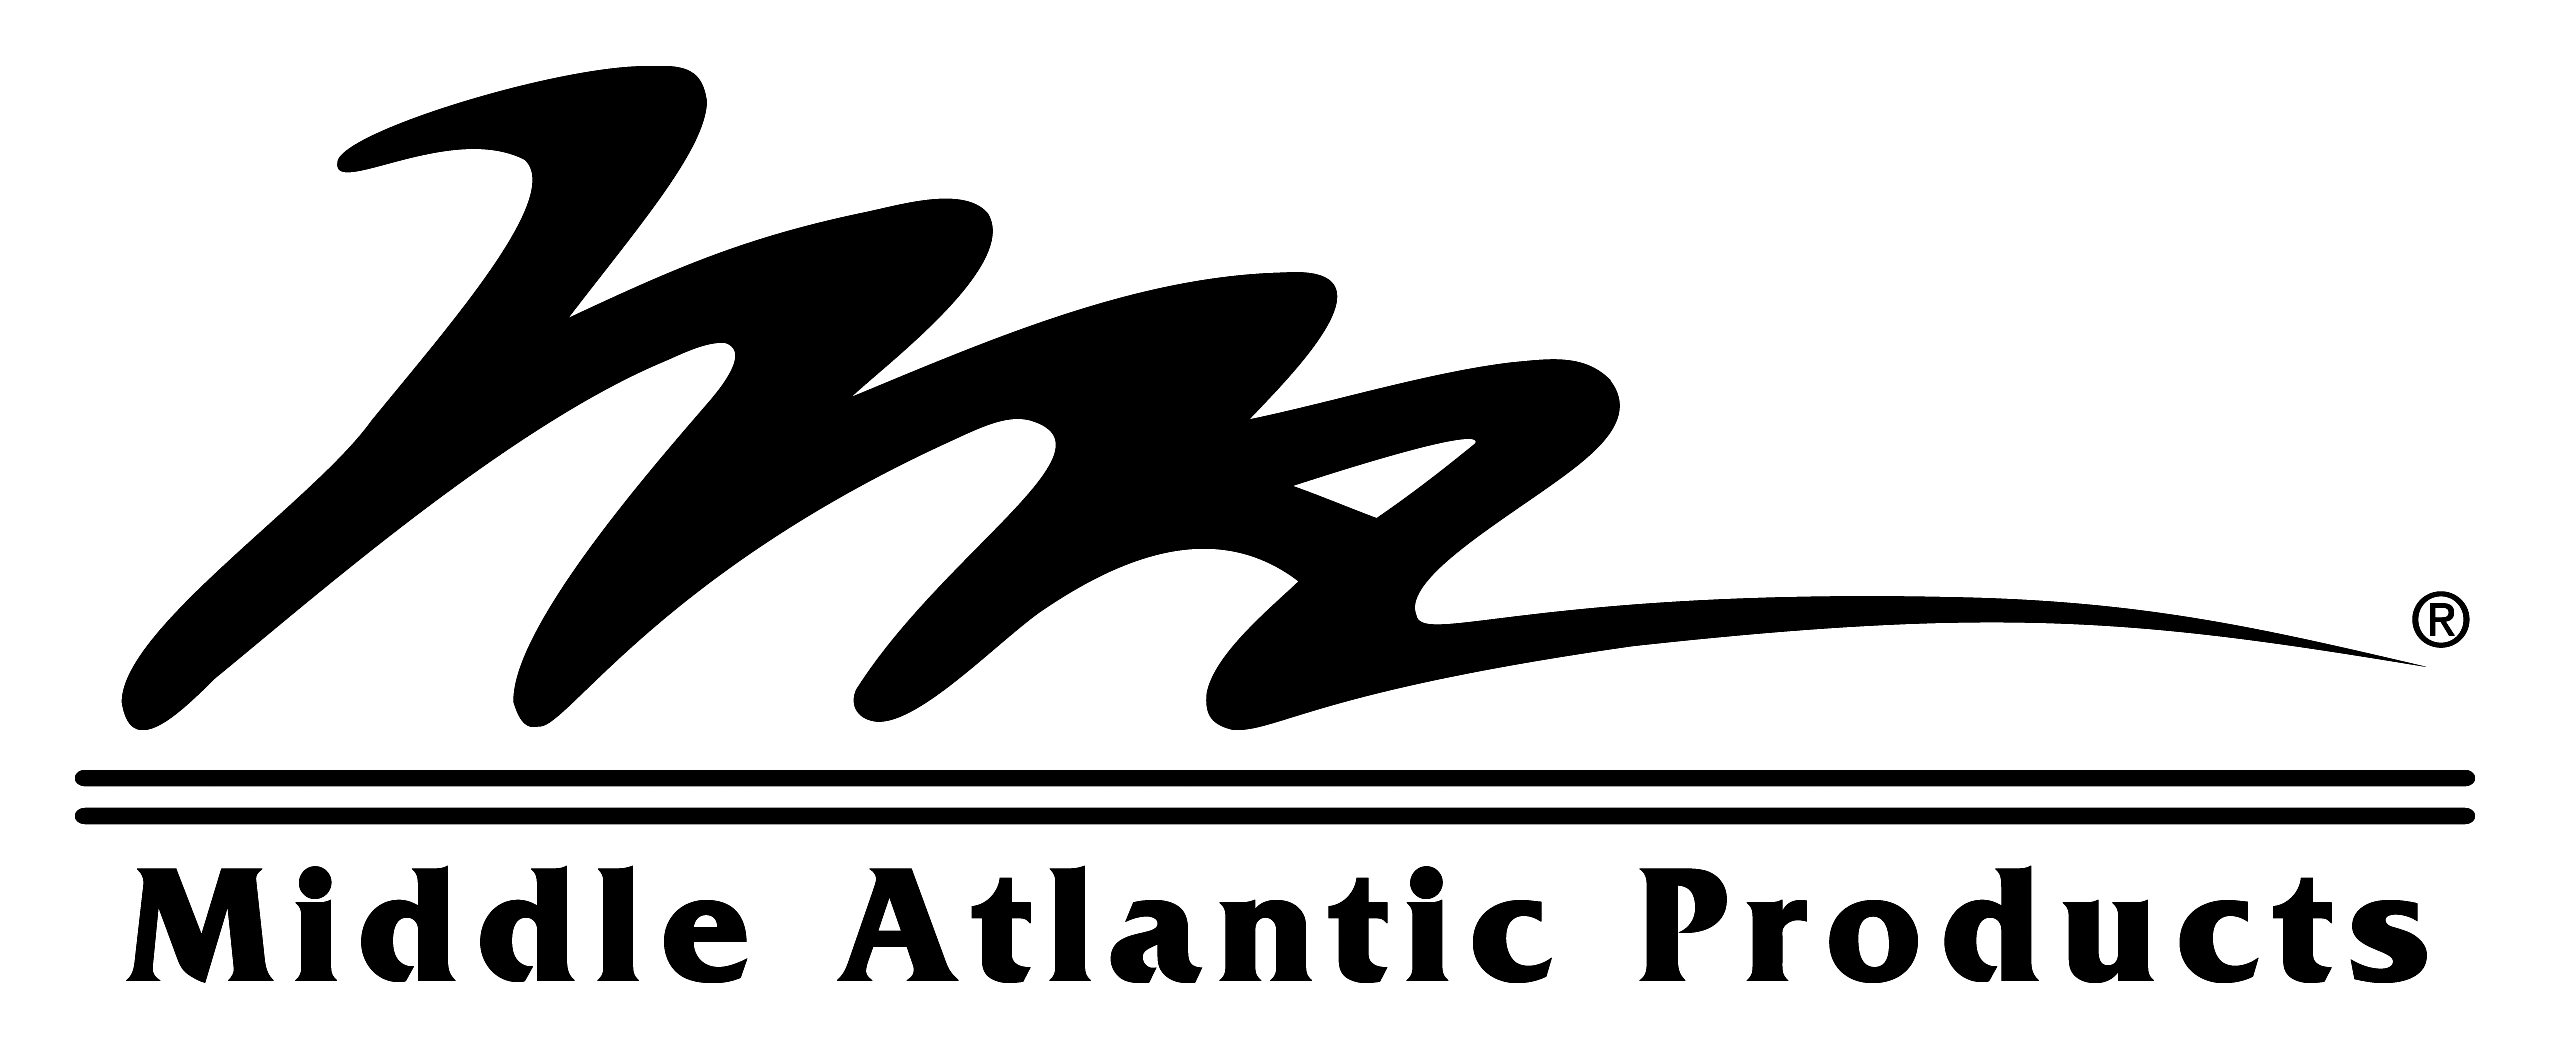 https://0201.nccdn.net/1_2/000/000/159/4b8/Middle-Atlantic-Logo.jpg